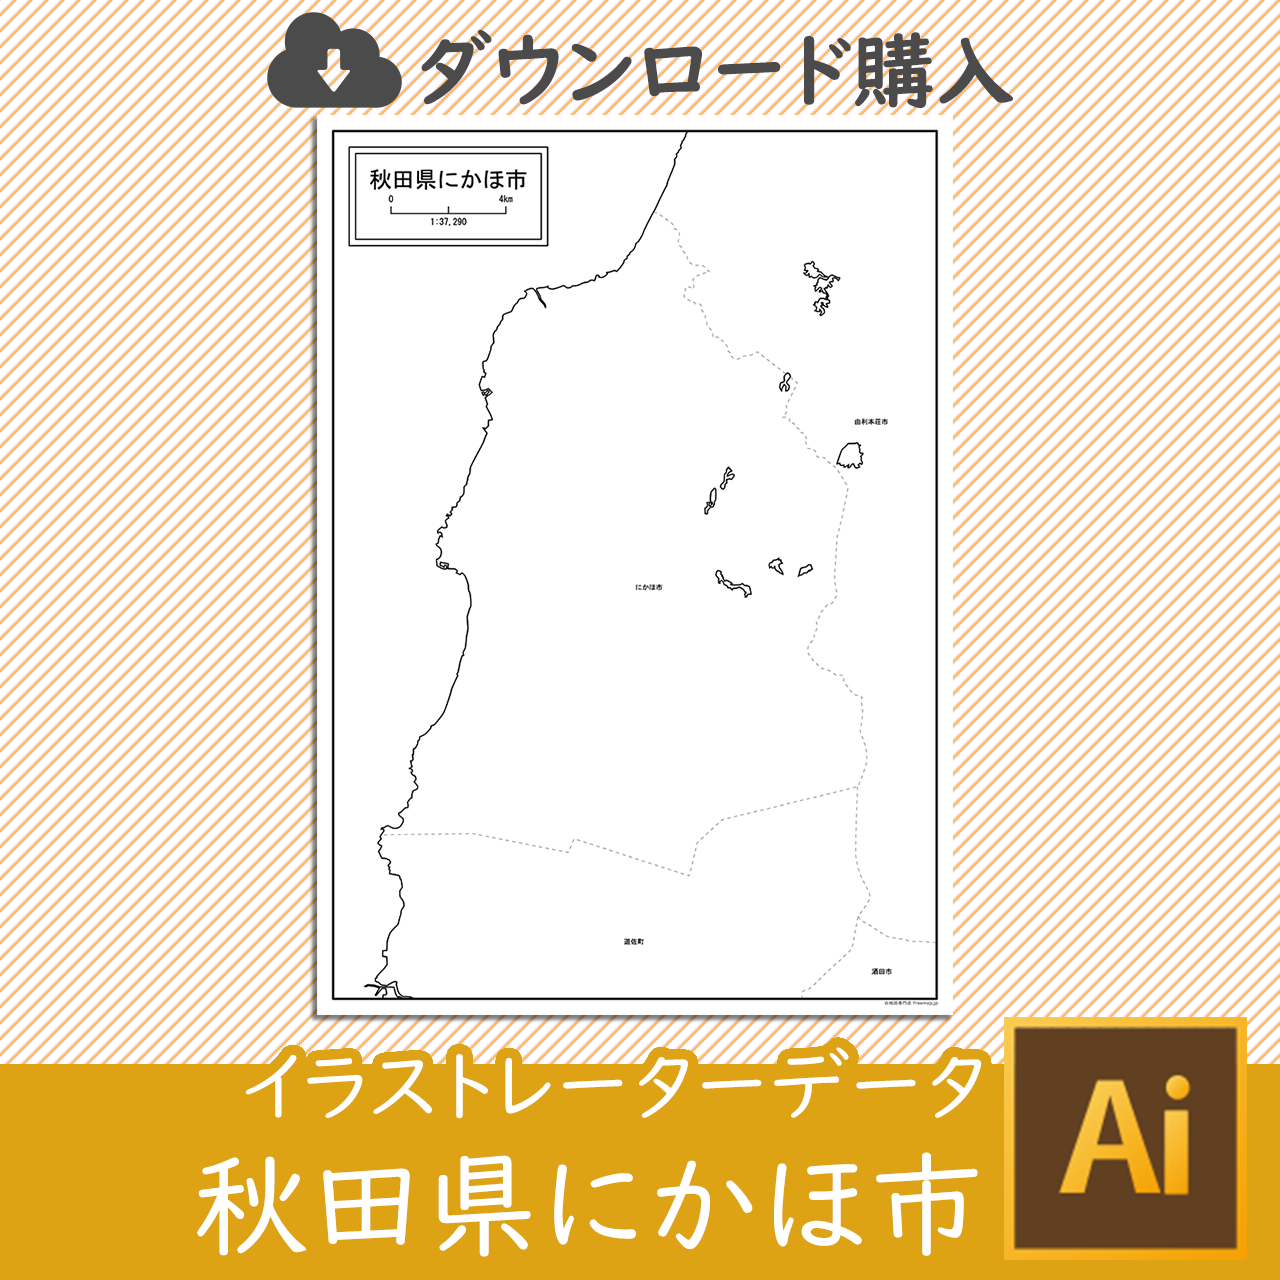 にかほ市のaiデータのサムネイル画像